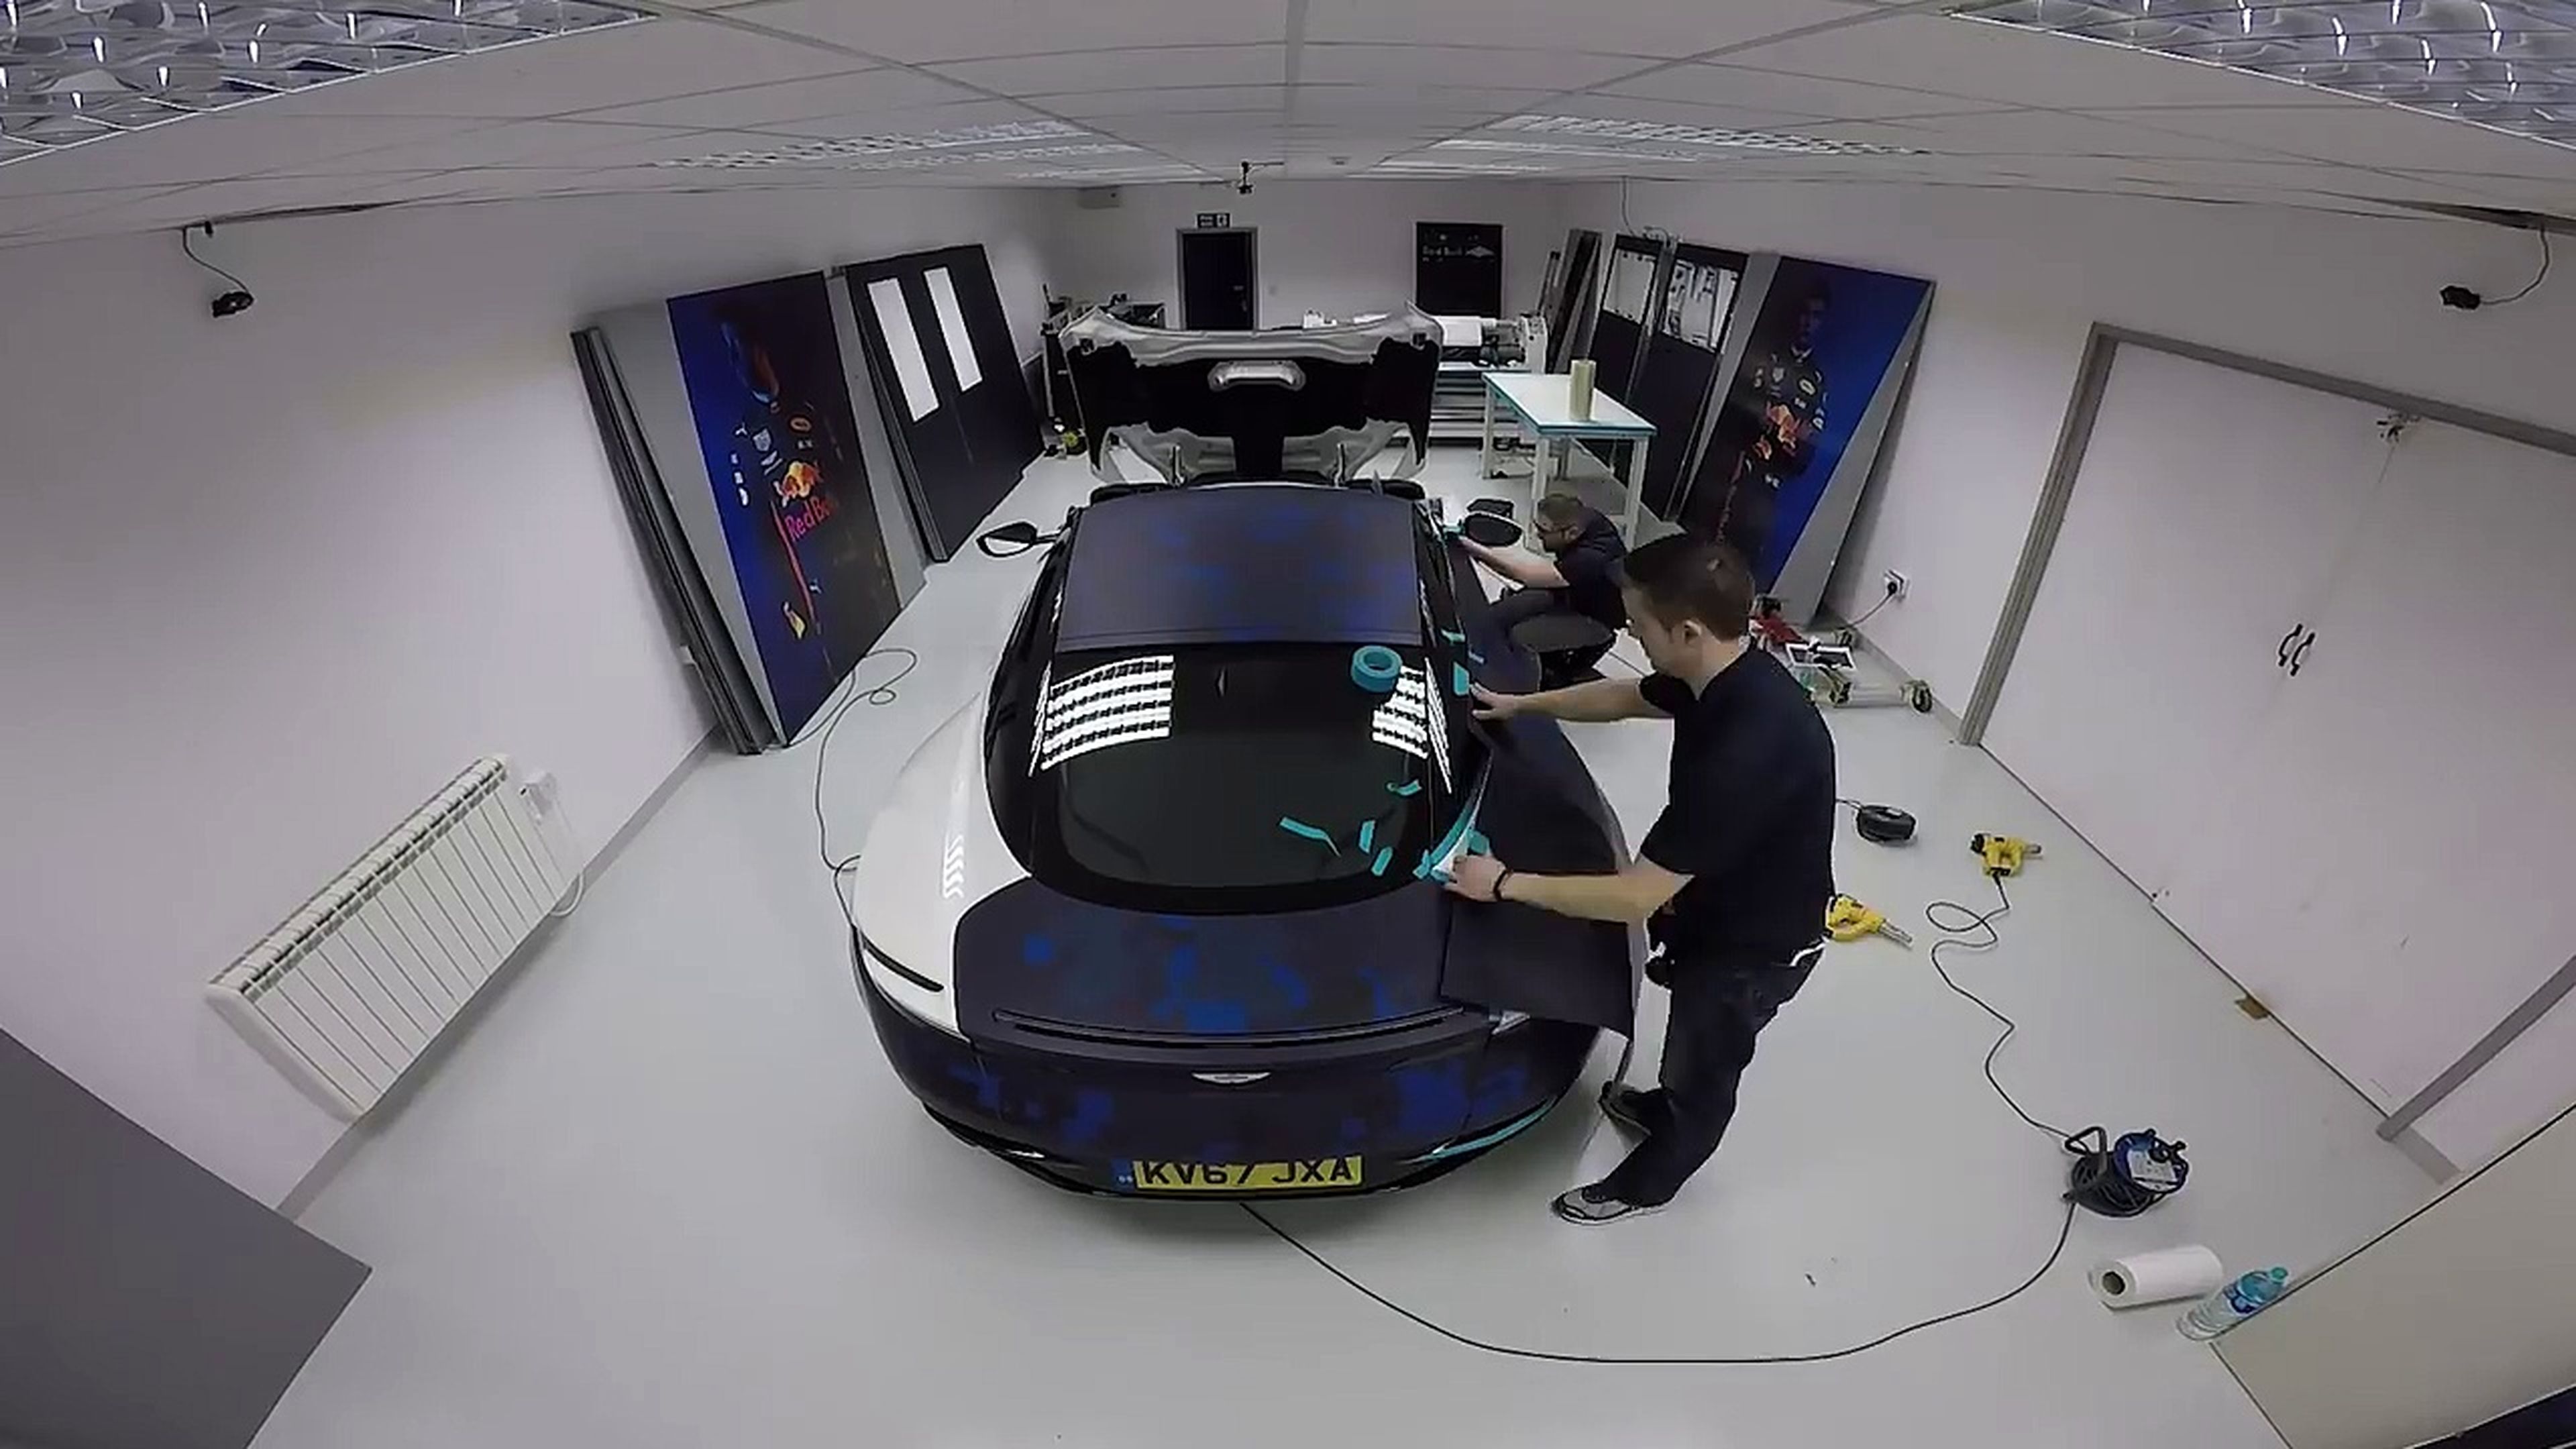 VÍDEO: un DB11 con los colores del F1 de Red Bull Racing, ¡se sale! [TG]